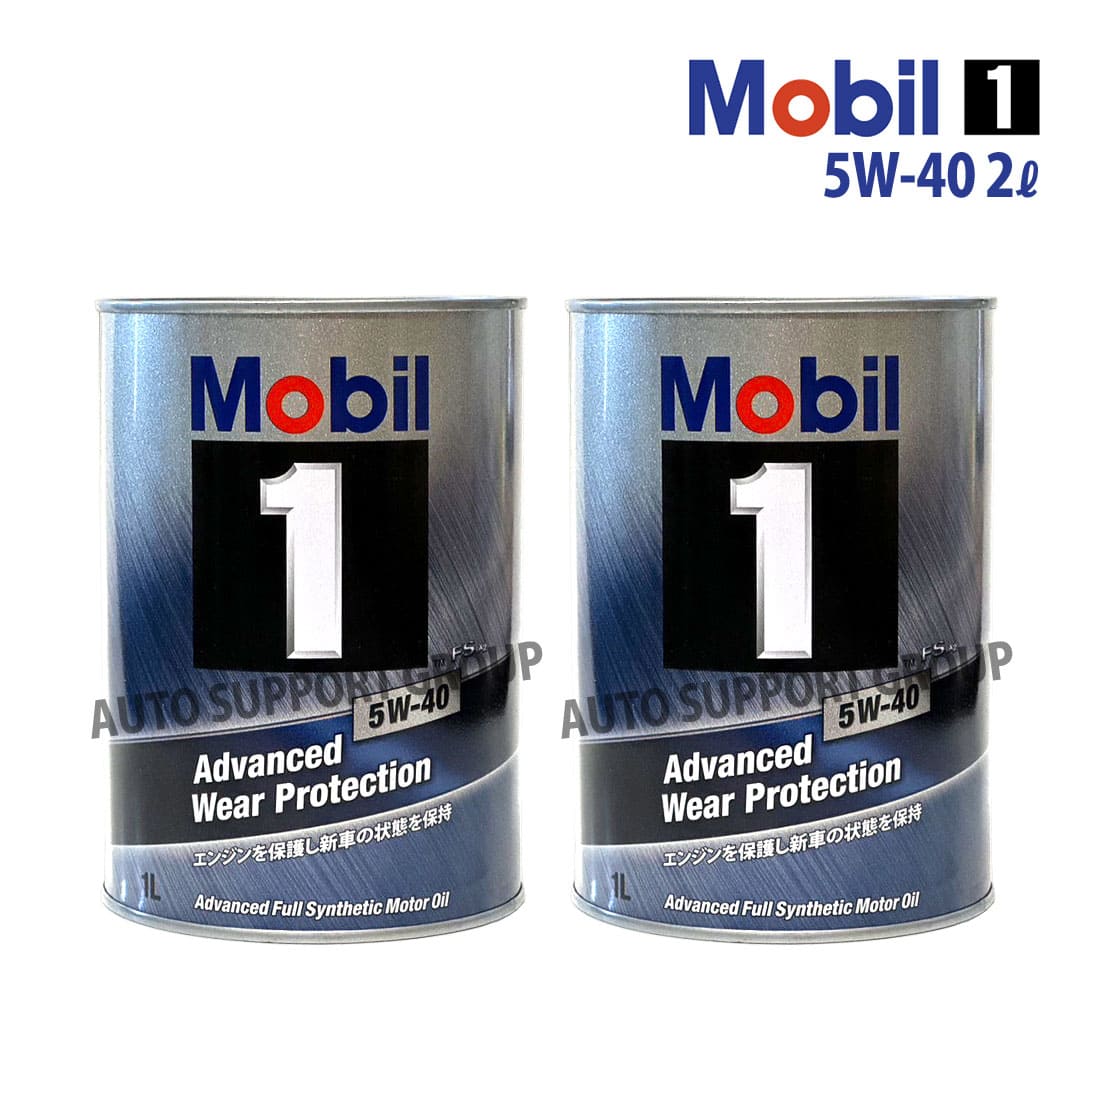 エンジンオイル 5W-40 FS X2 モービル1 Mobil1 4L缶 (4リットル) : ys 